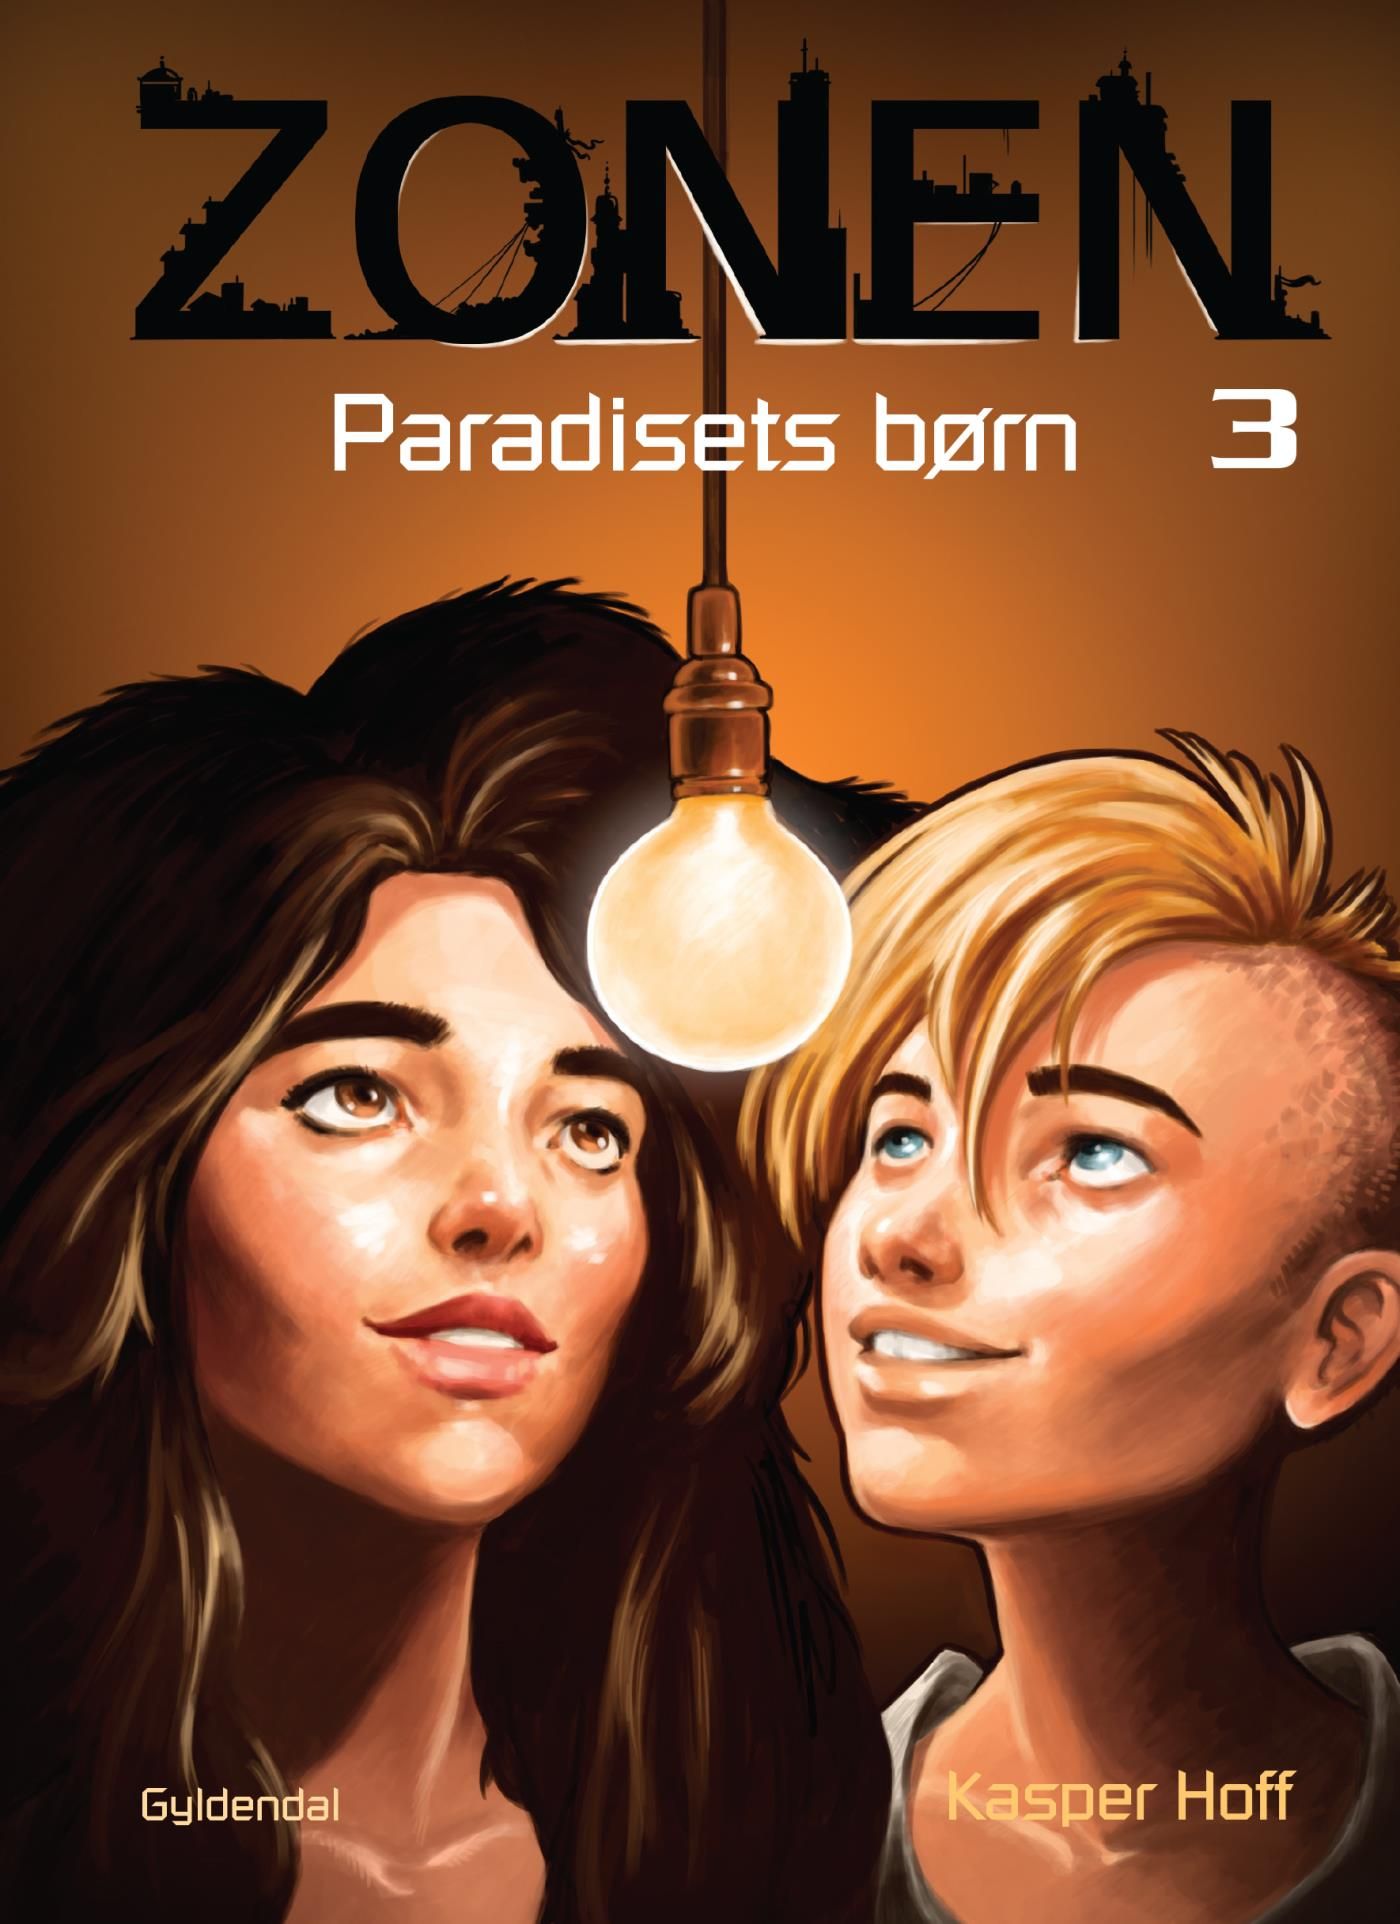 Zonen 3 - Paradisets børn, e-bok av Kasper Hoff